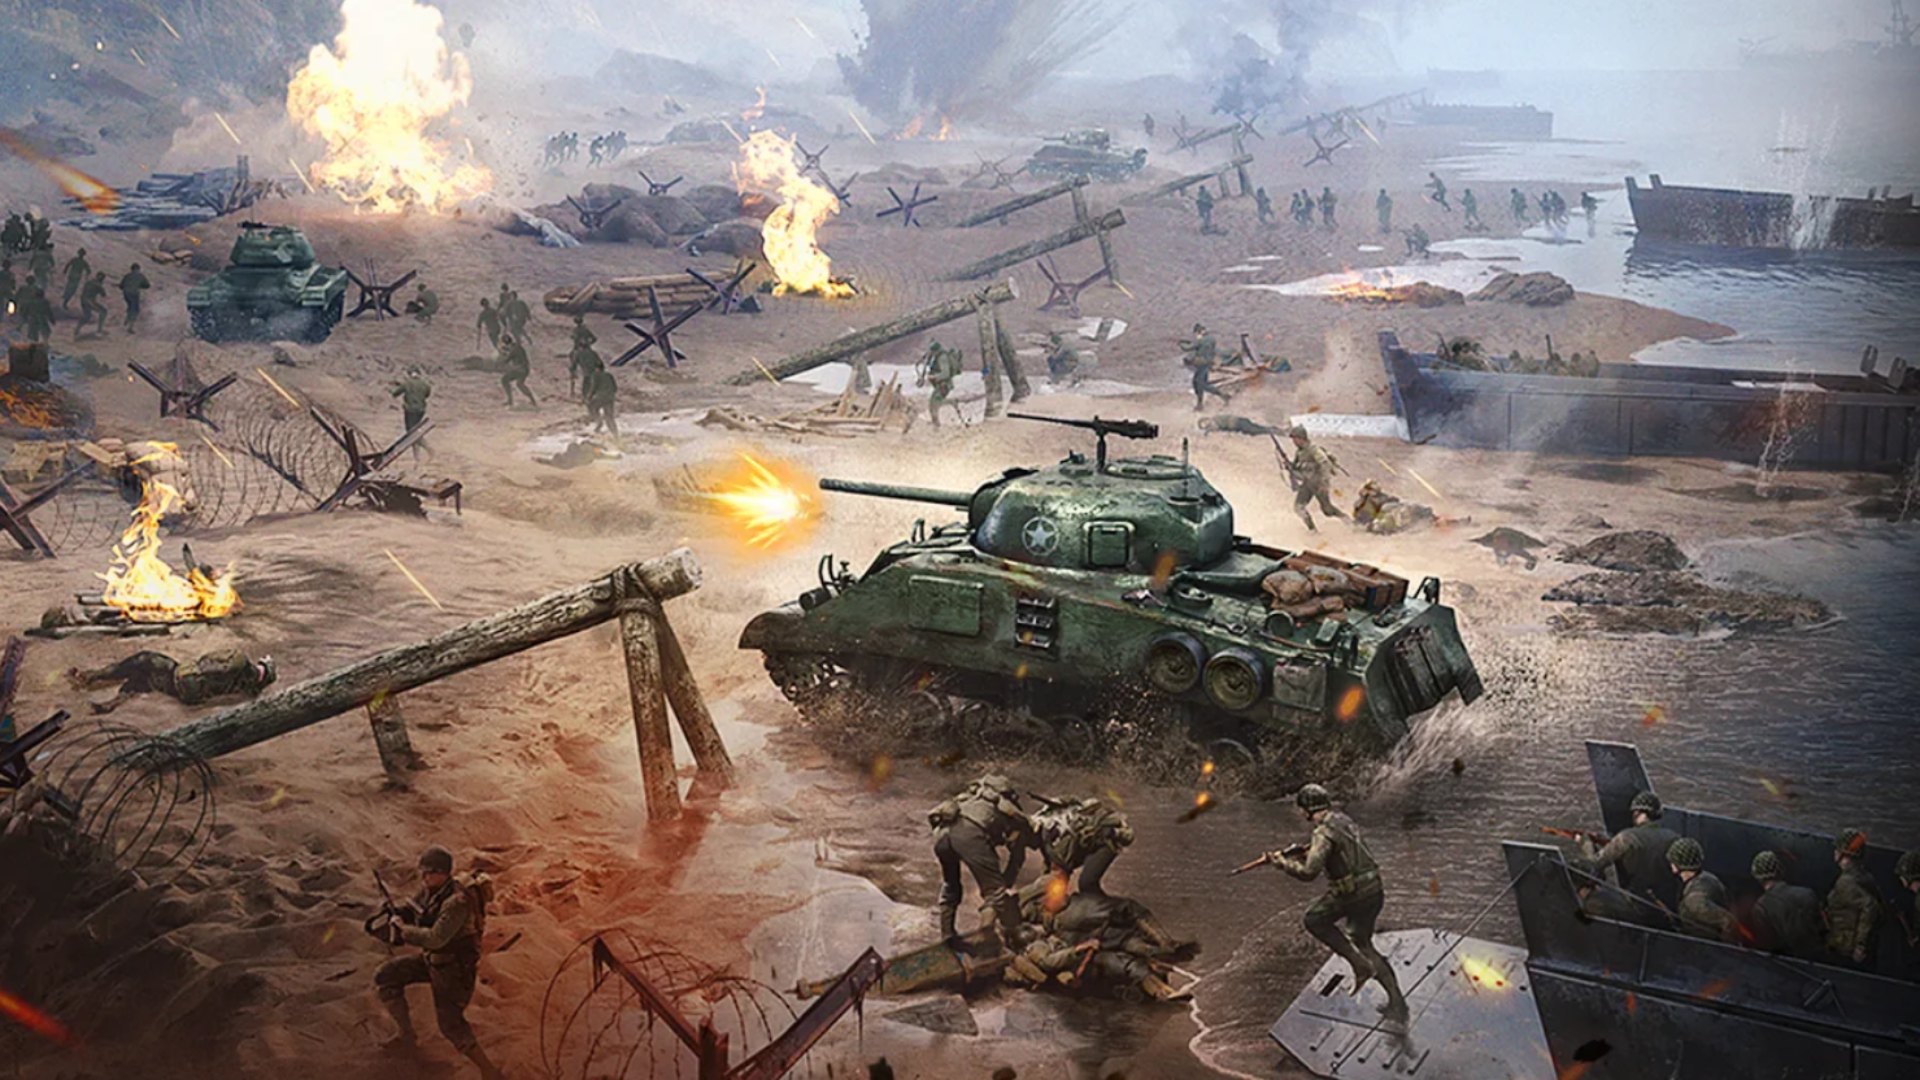 Meilleurs jeux de guerre mobiles: Warpath. L'image montre un champ de bataille jonché de chars et de soldats